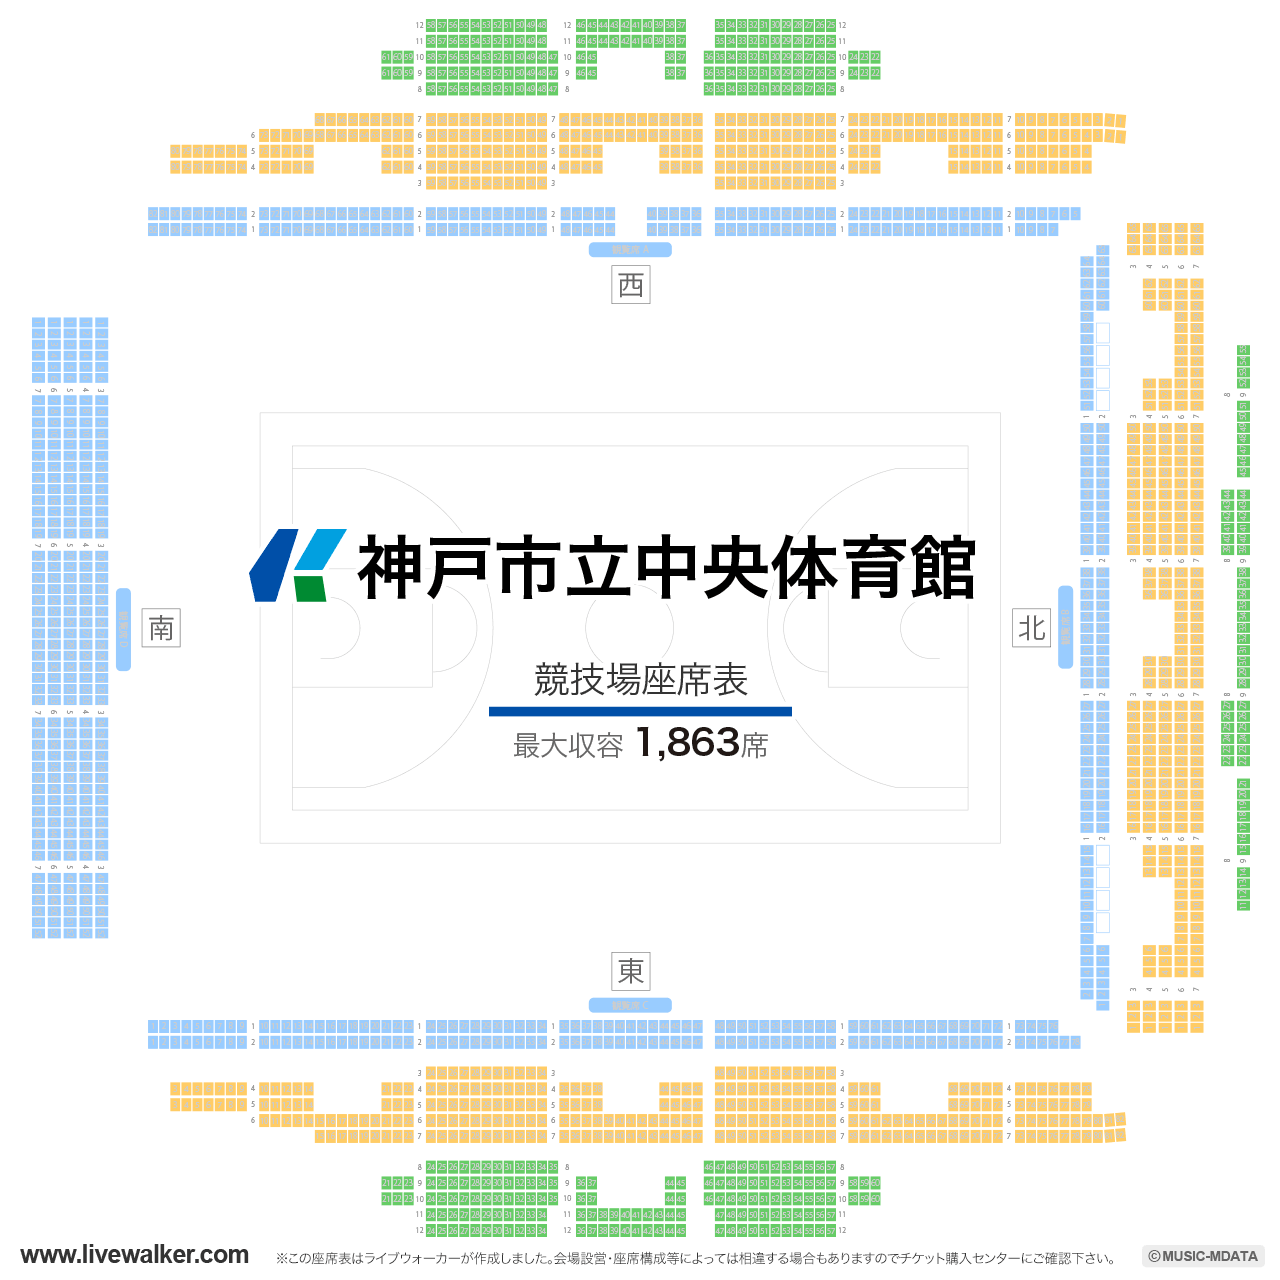 神戸市立中央体育館競技場の座席表